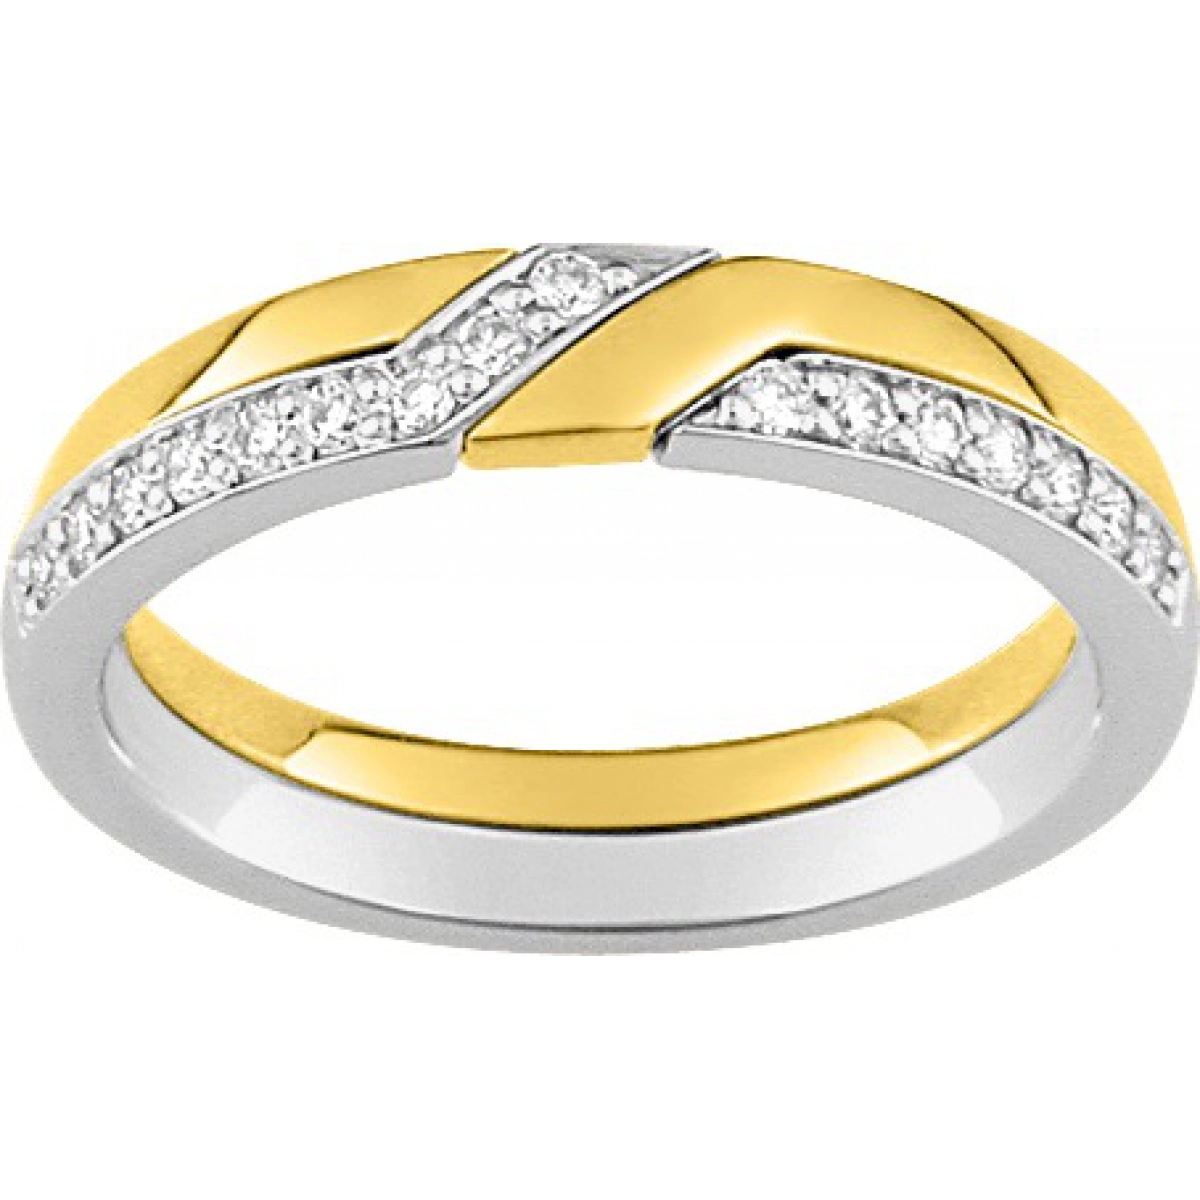 Wedding ring w. 16 diam 0.16ct GHSI 18K 2TG Lua Blanca  4E371DI0 - Size 64